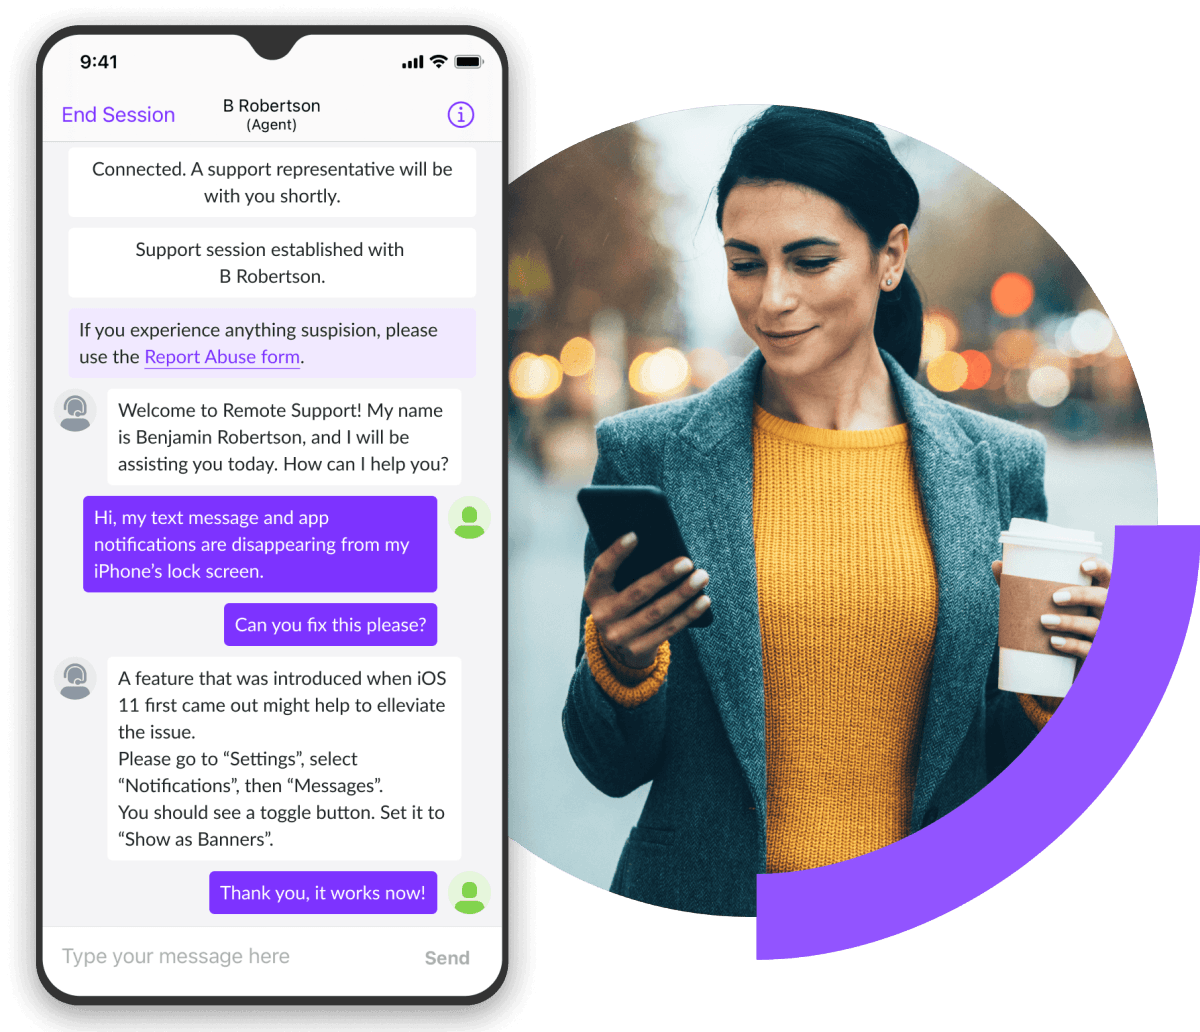 Sessione in chat di supporto mostrata sui cellulari con l'immagine di una donna a passeggio che guarda il telefono.